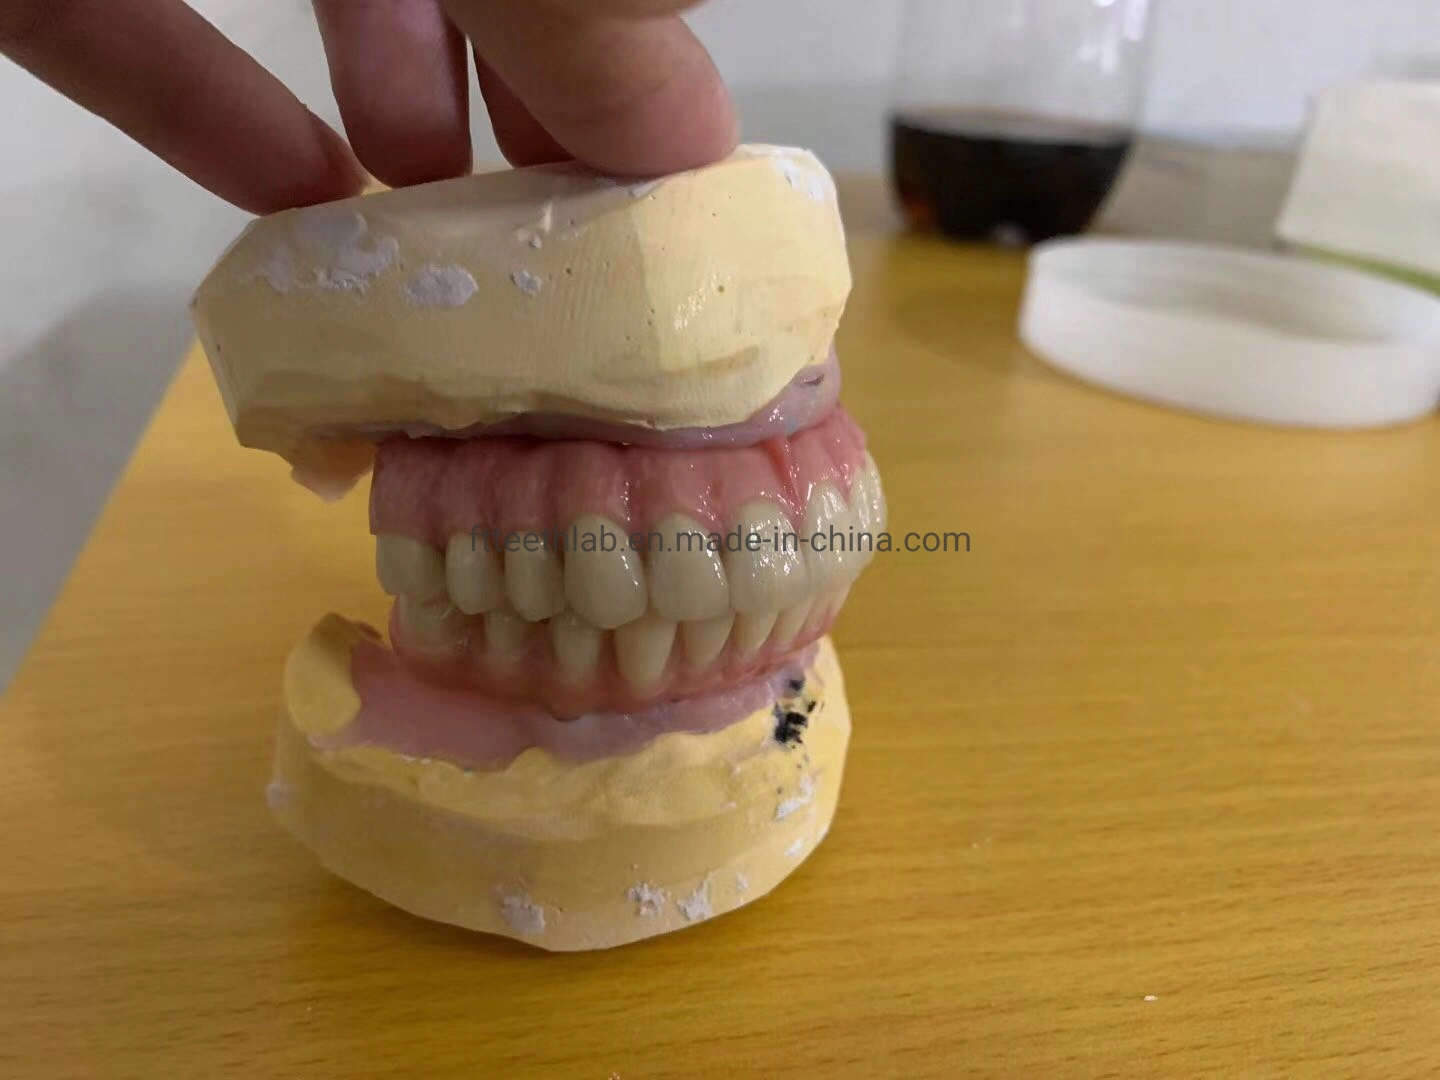 Эстетическим обедненной смеси все 4 стоматологической имплантации мост стоматологической имплантации